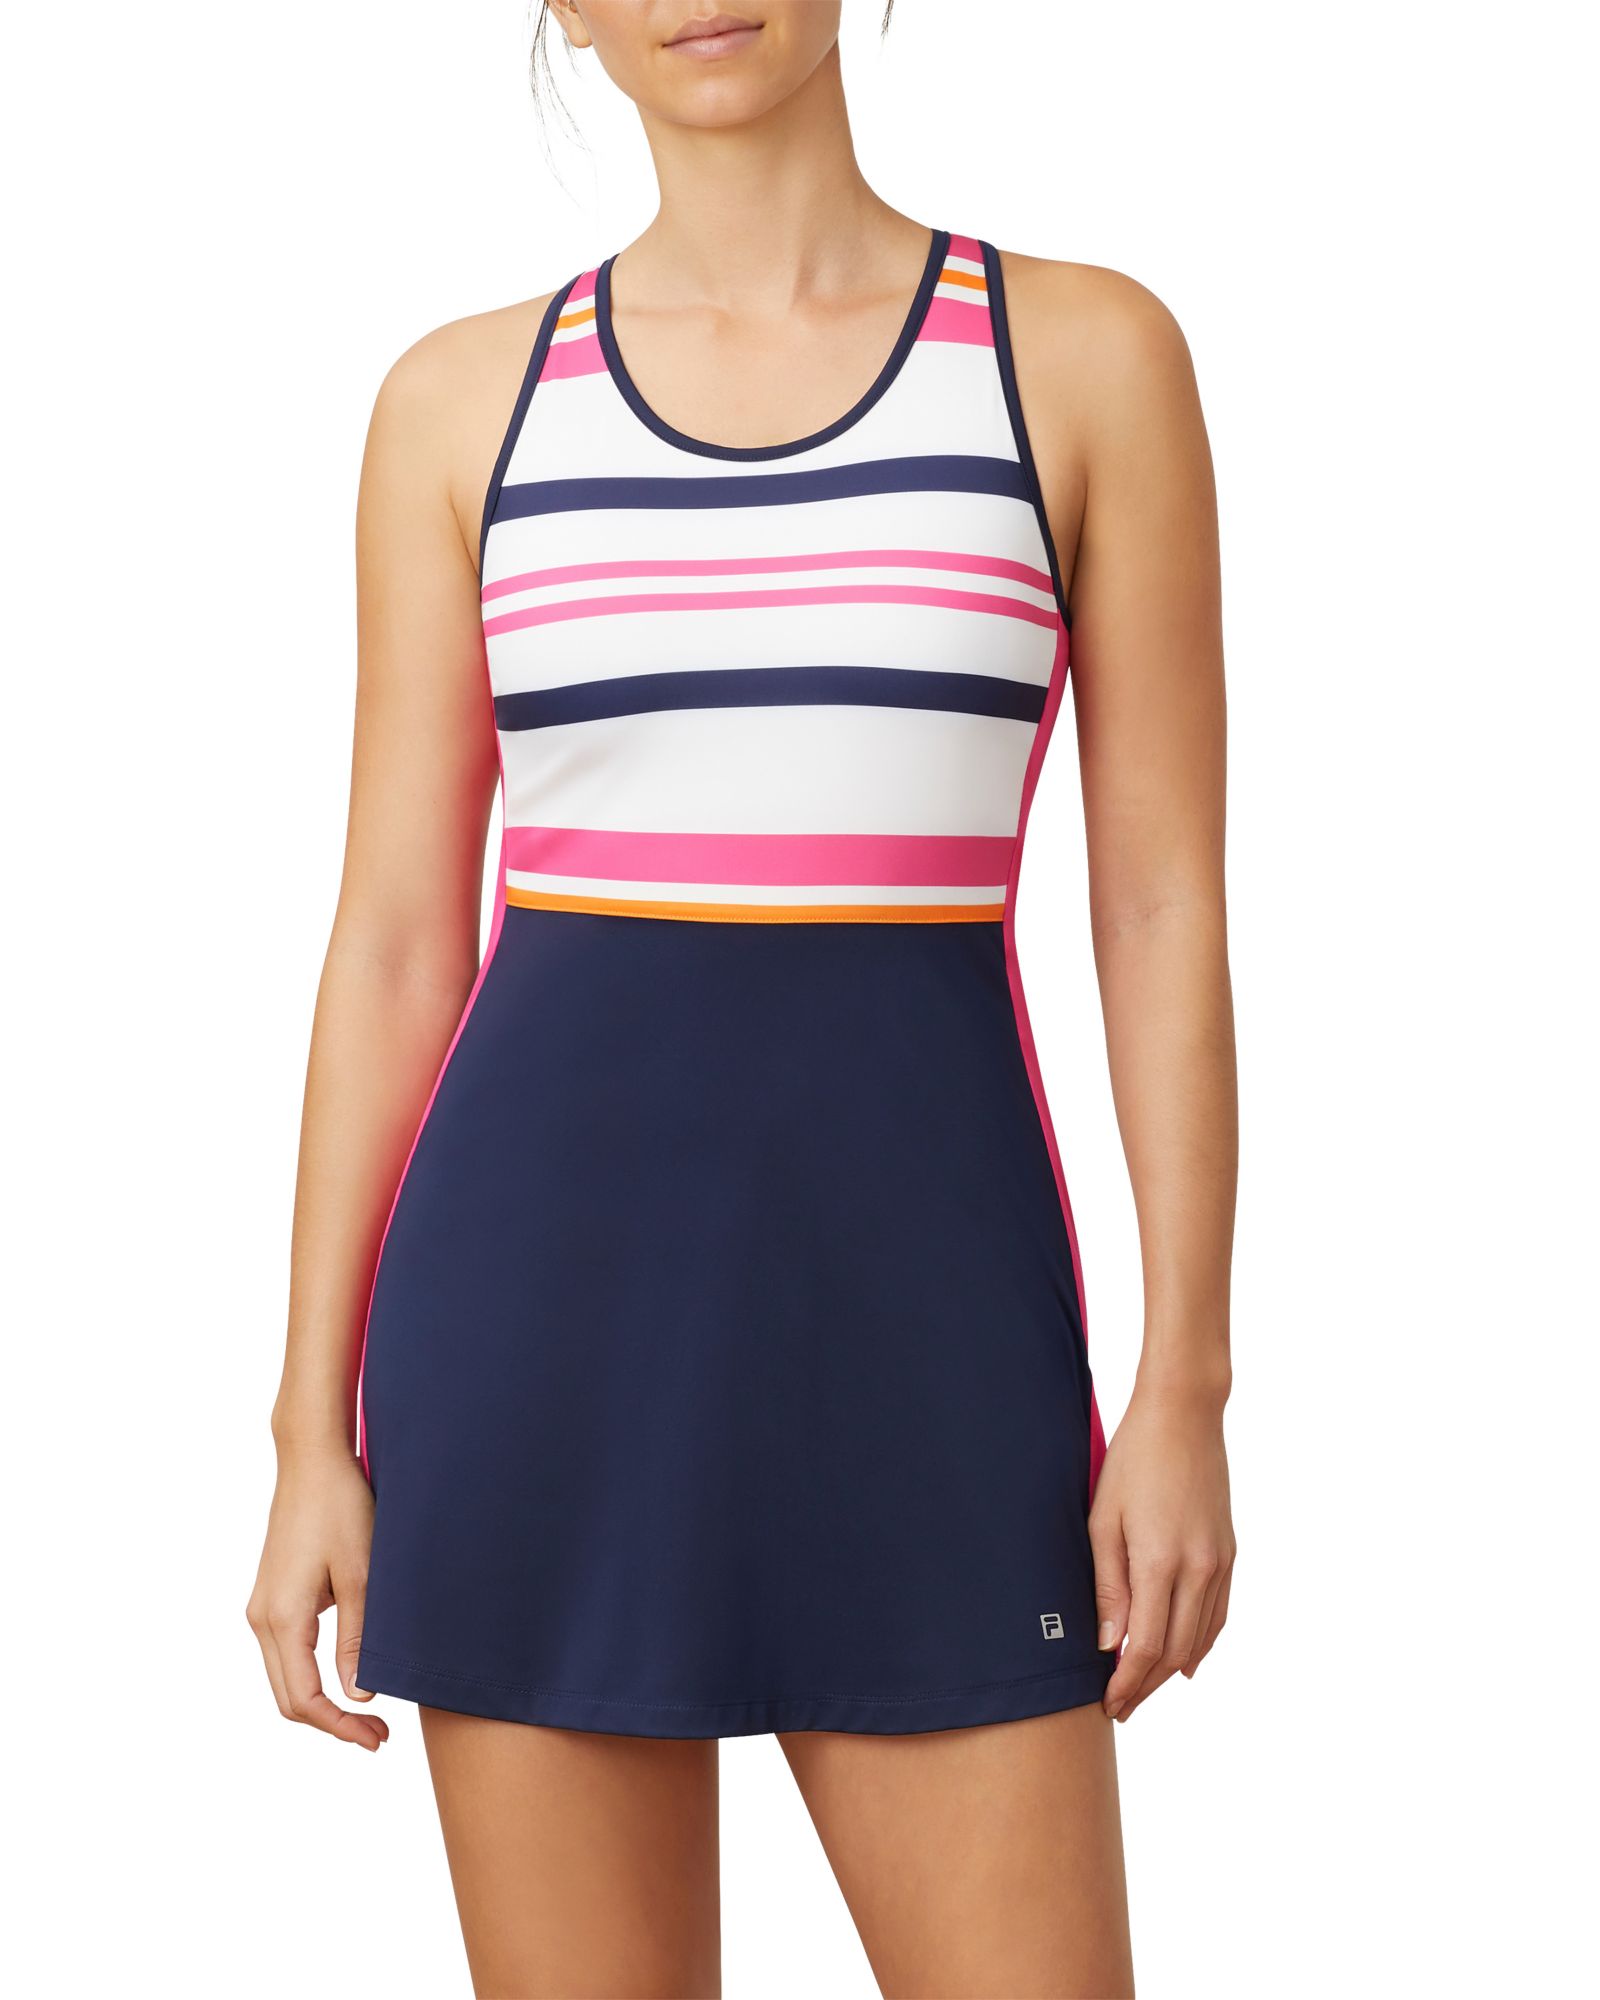 fila tennis dress